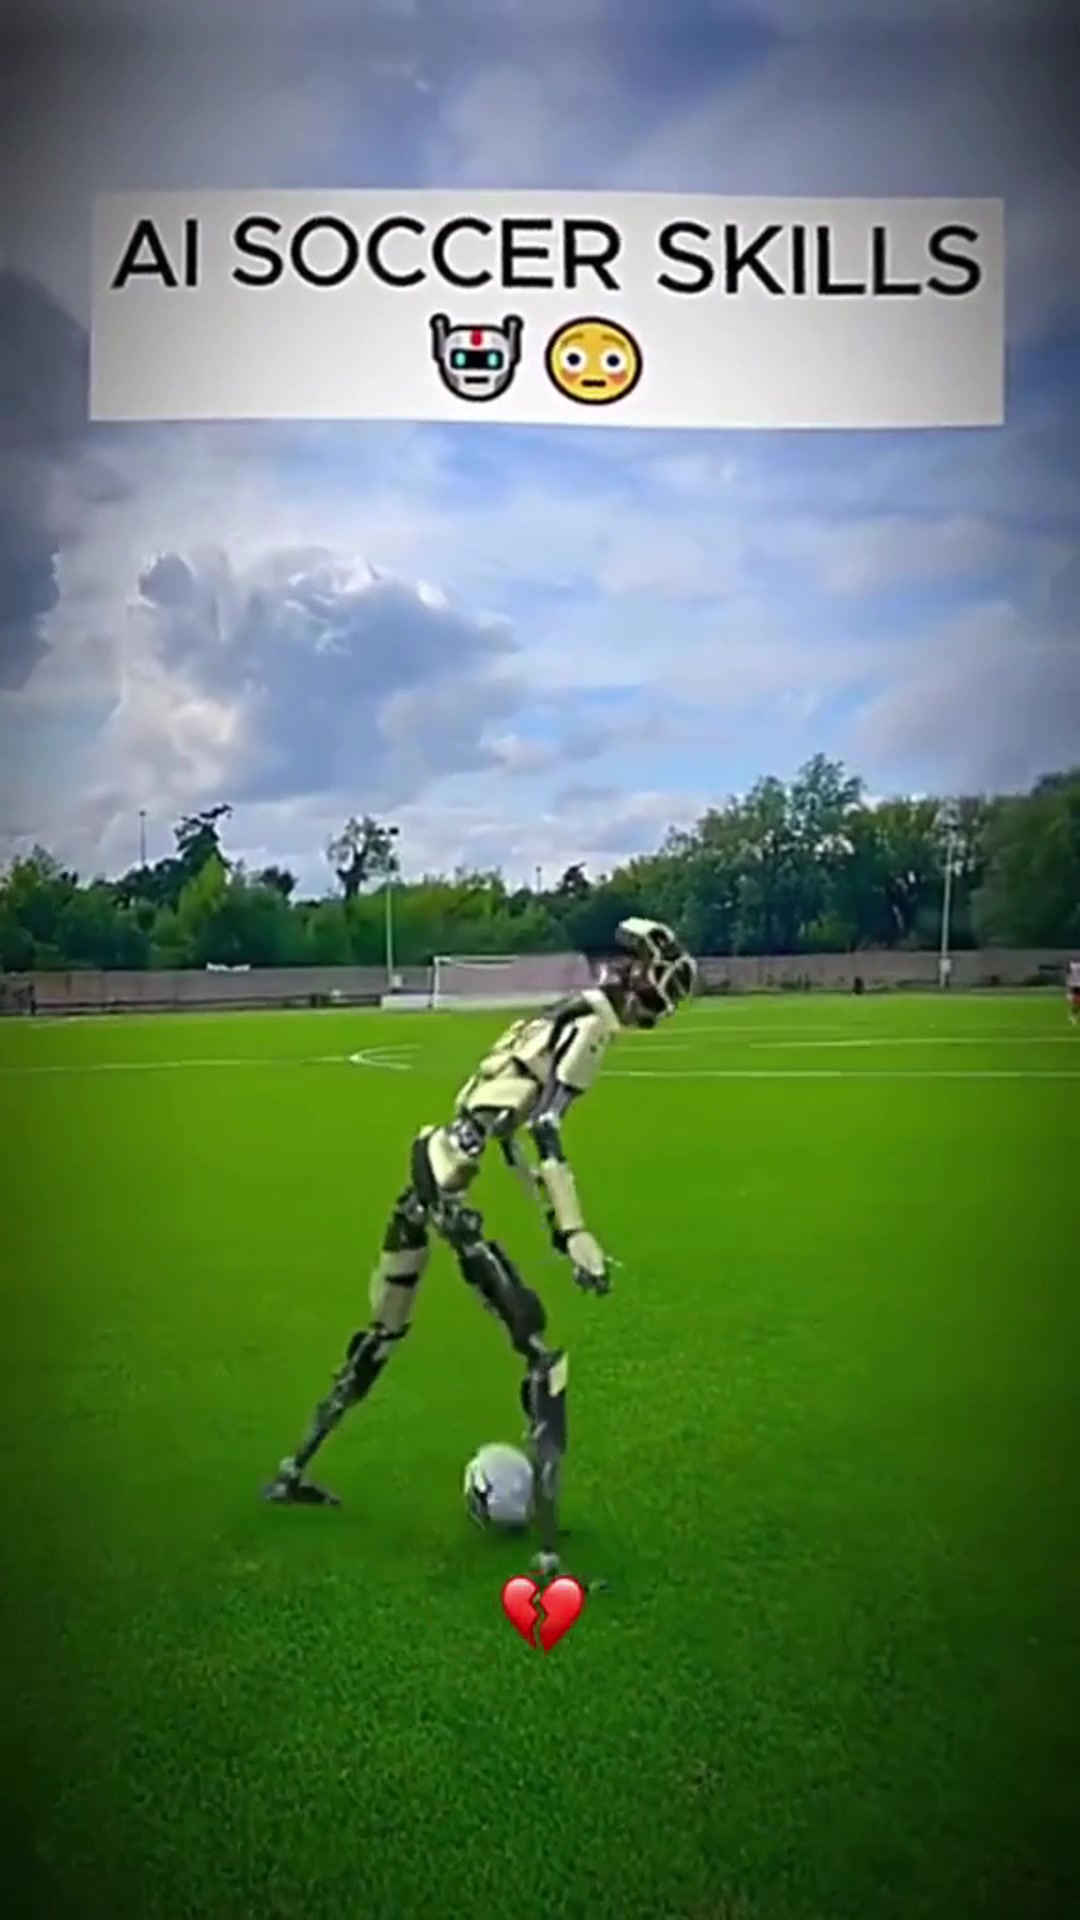 机器人踢足球？抱歉，我都没有思考过这个问题